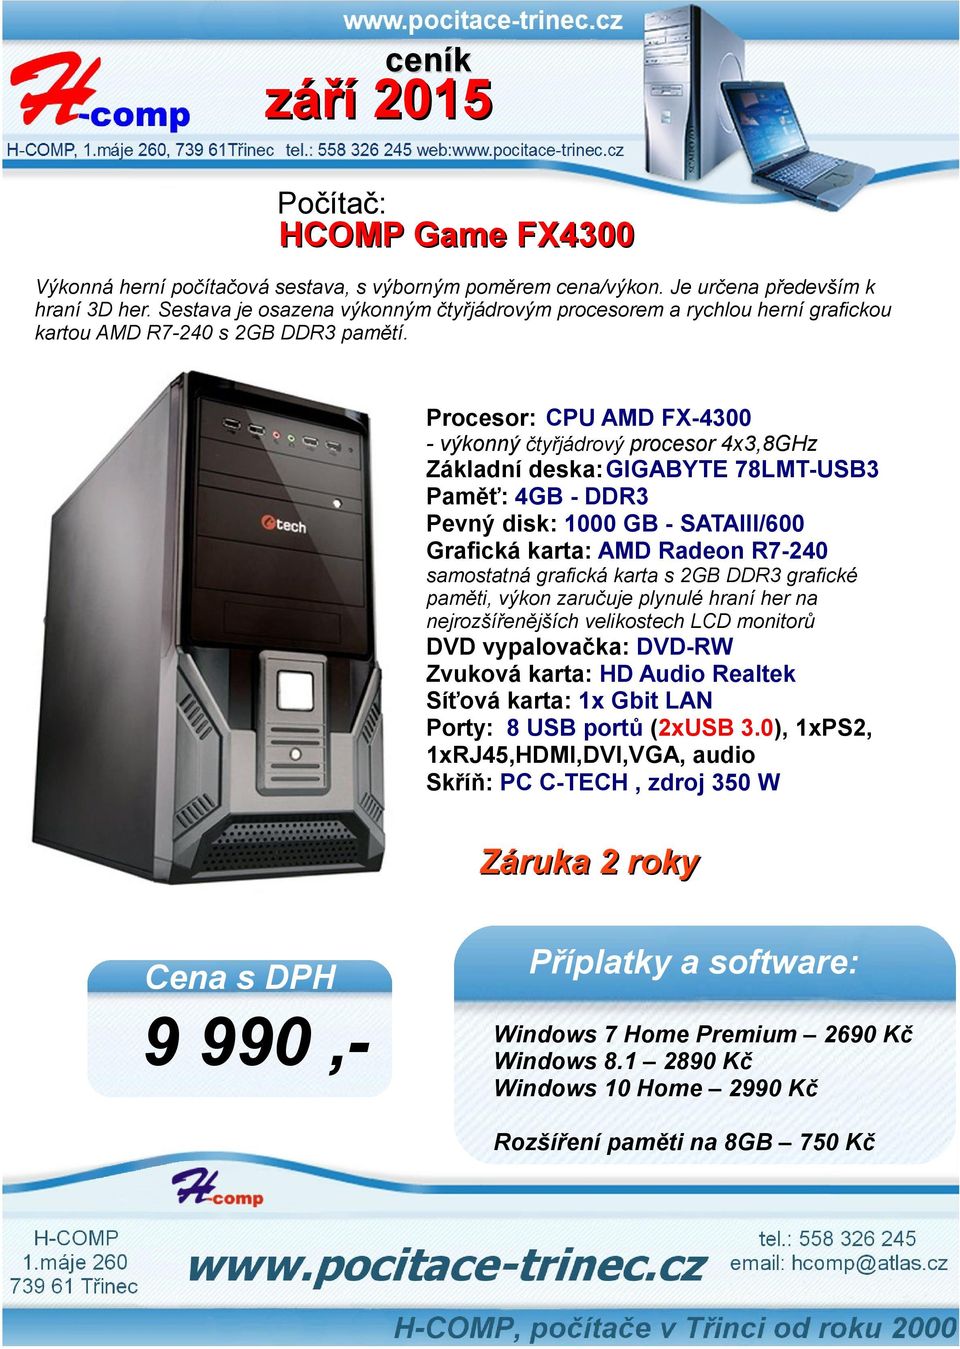 Procesor: CPU AMD FX-4300 - výkonný čtyřjádrový procesor 4x3,8GHz Základní deska:gigabyte 78LMT-USB3 Paměť: 4GB - DDR3 Pevný disk: 1000 GB - SATAIII/600 Grafická